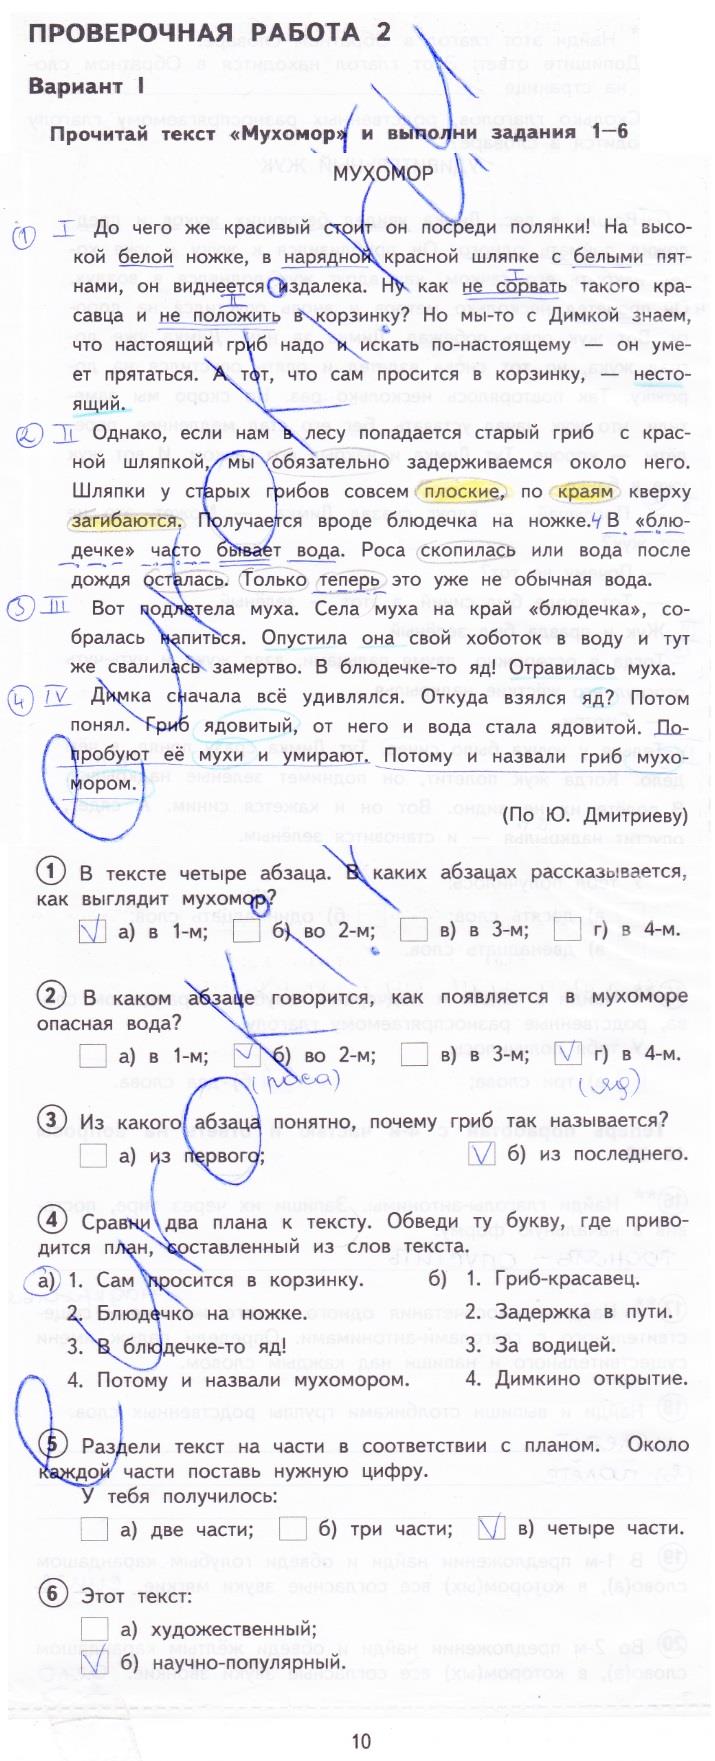 гдз 4 класс тетрадь для проверочных работ страница 7 русский язык Лаврова